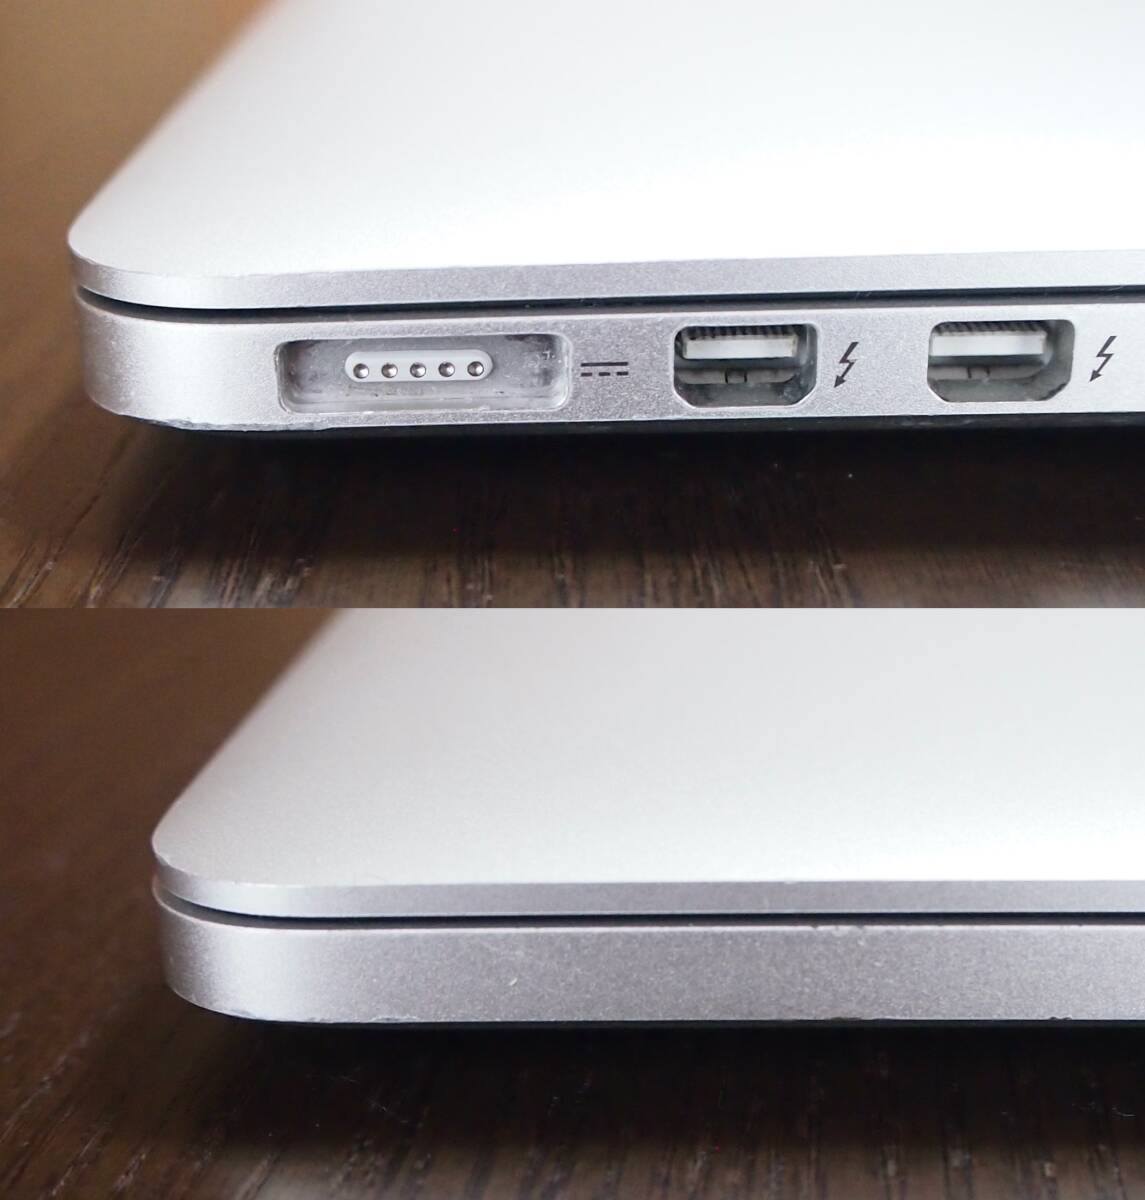 【画面きれい】MacBook Pro 2.6GHz デュアルコアIntel Core i5 Retina, 13-inch, Late 2013_画像7